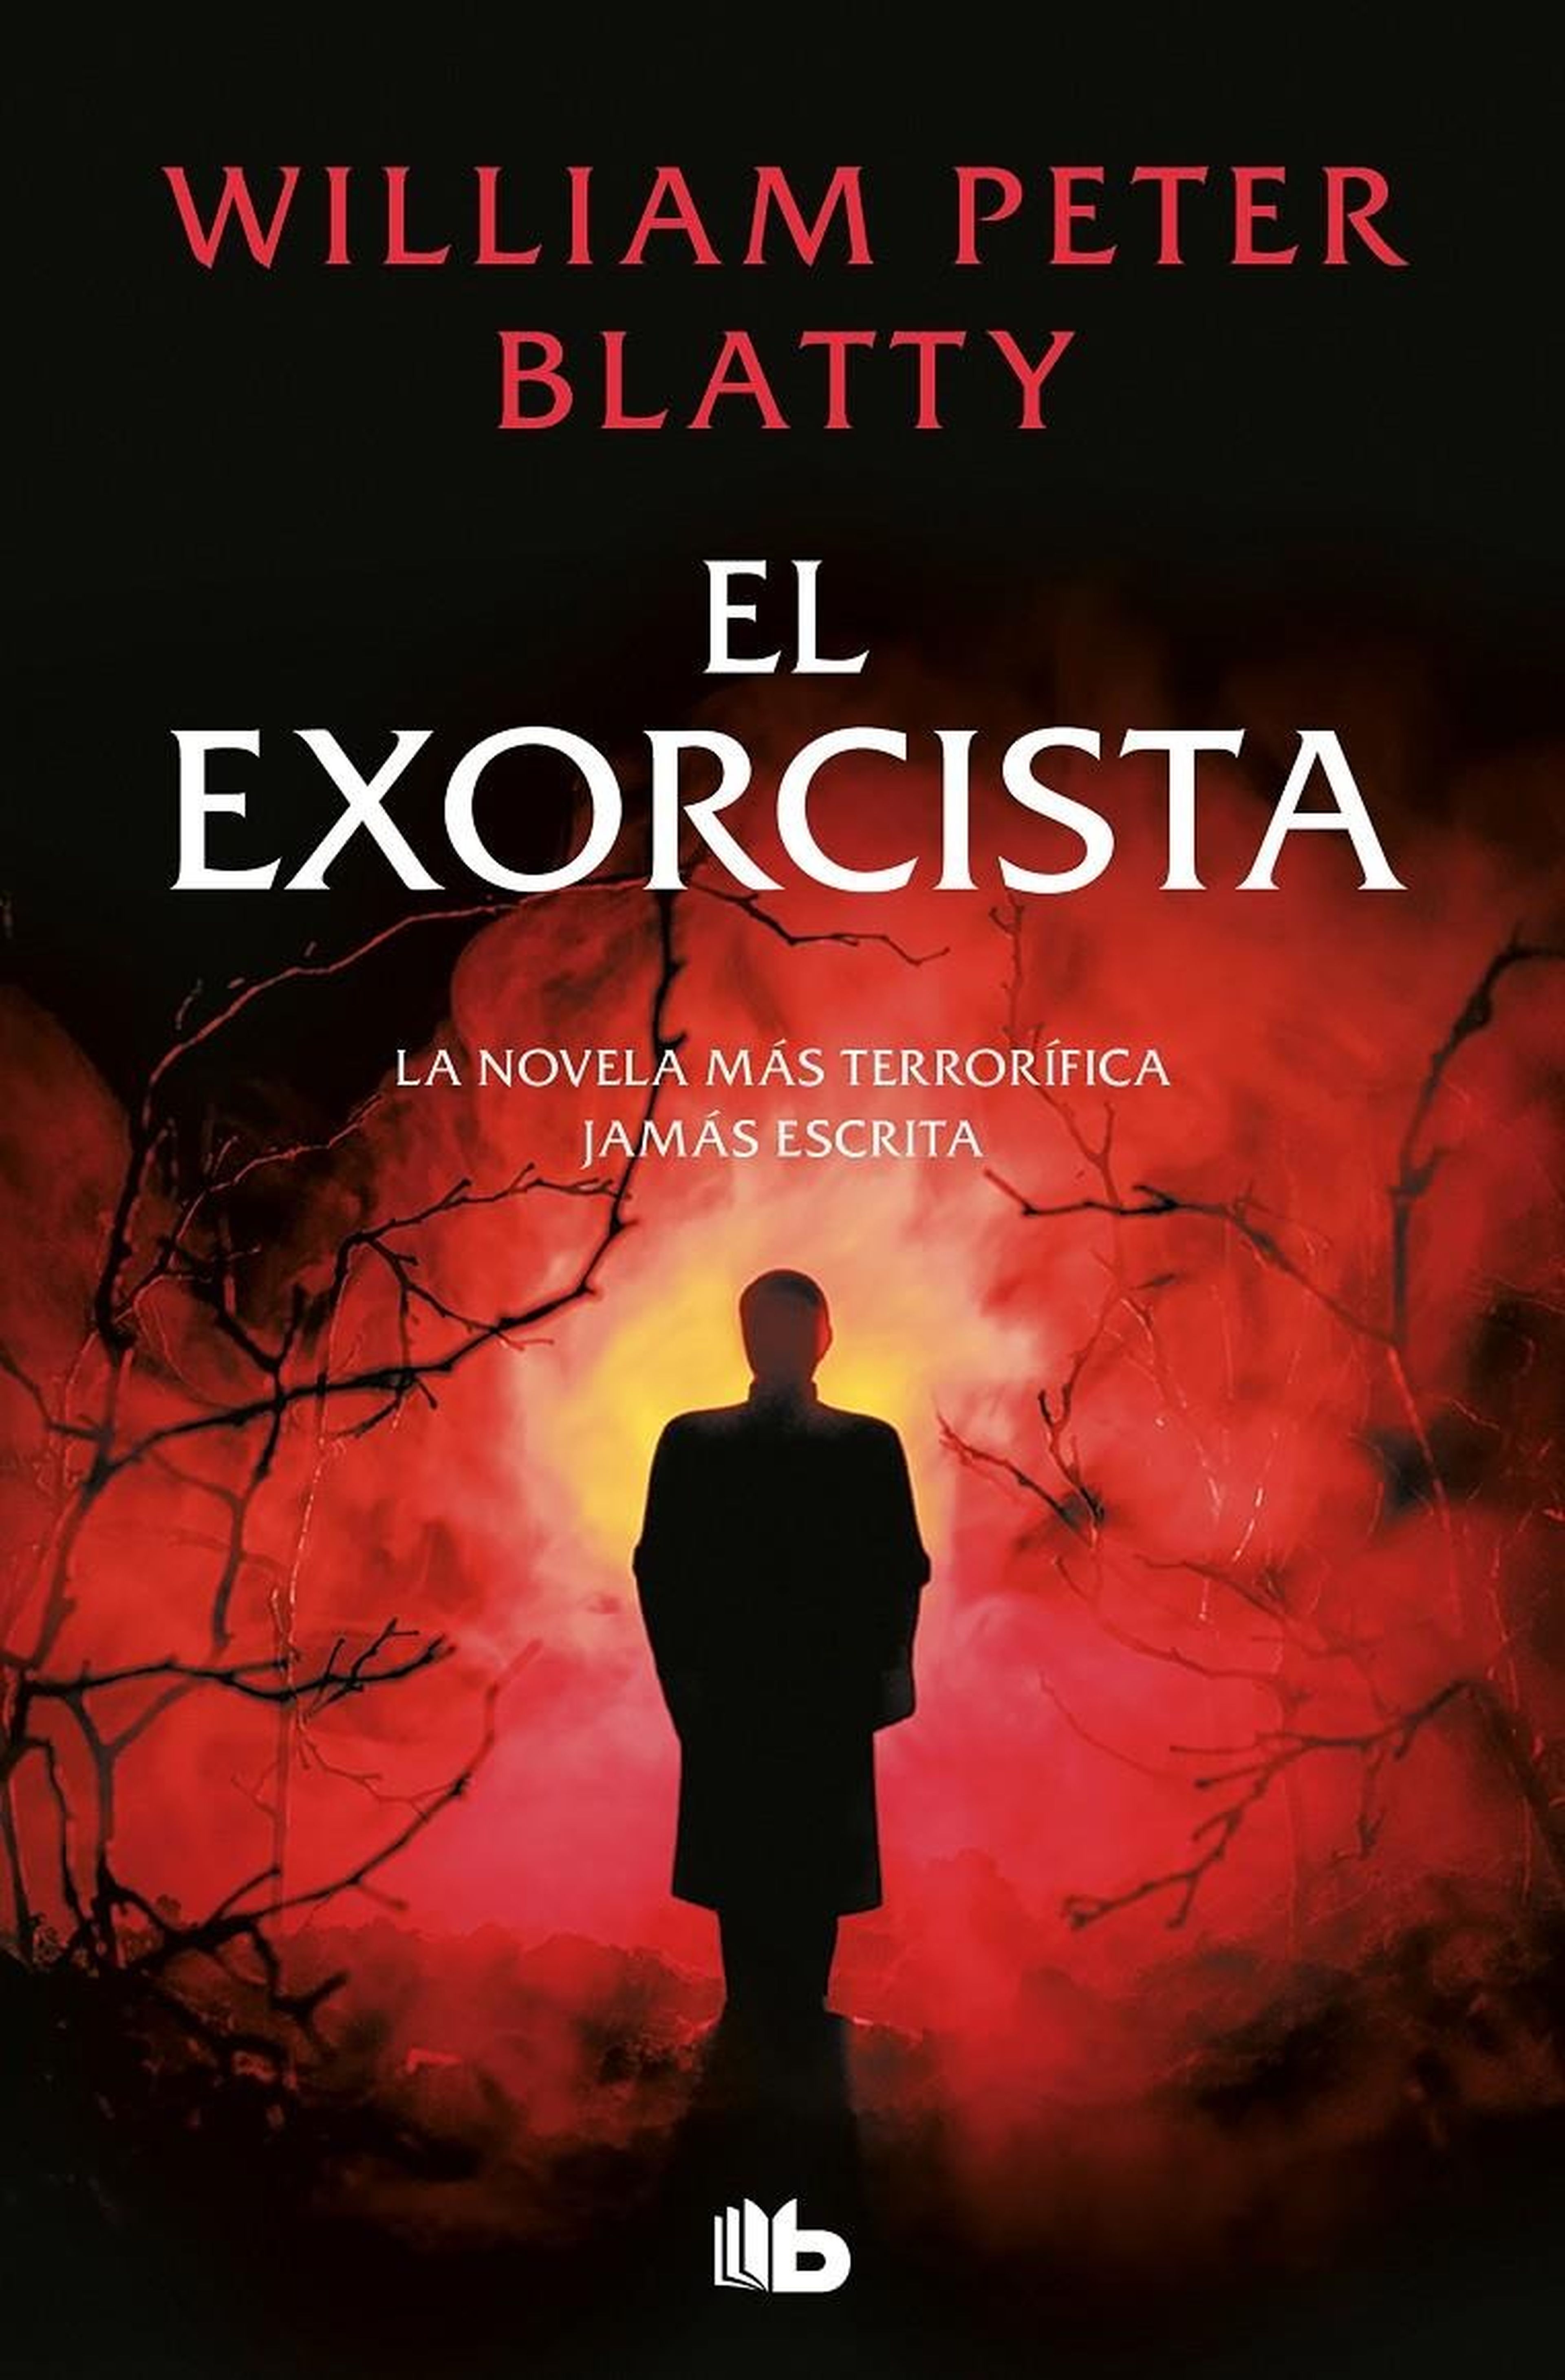 El exorcista (William Peter Blatty, 1971)